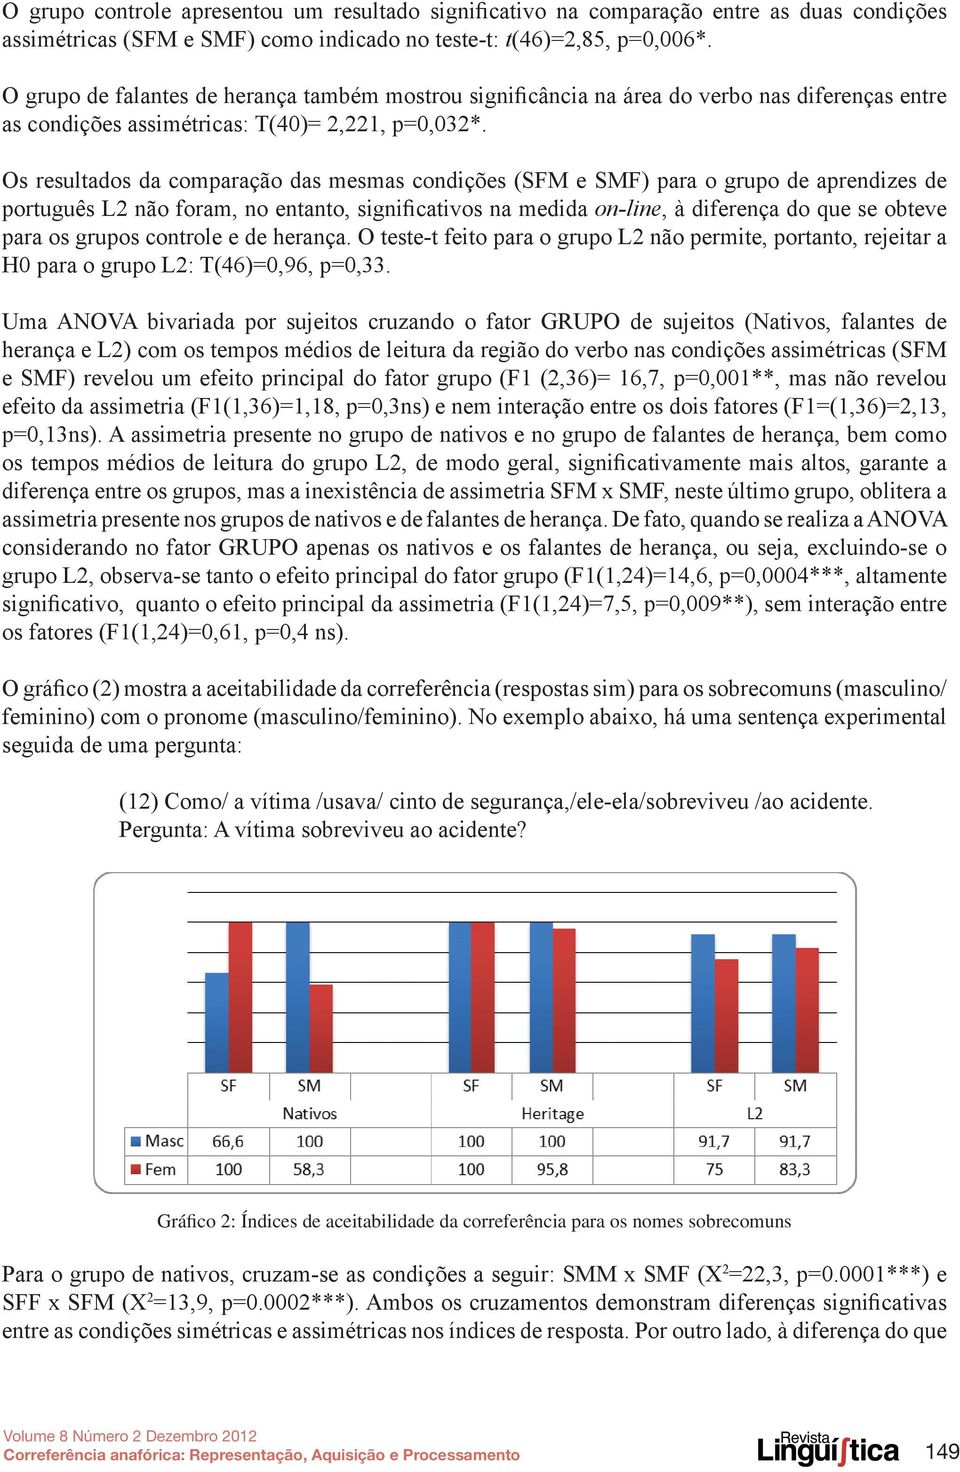 Os resultados da comparação das mesmas condições (SFM e SMF) para o grupo de aprendizes de português L2 não foram, no entanto, significativos na medida on-line, à diferença do que se obteve para os